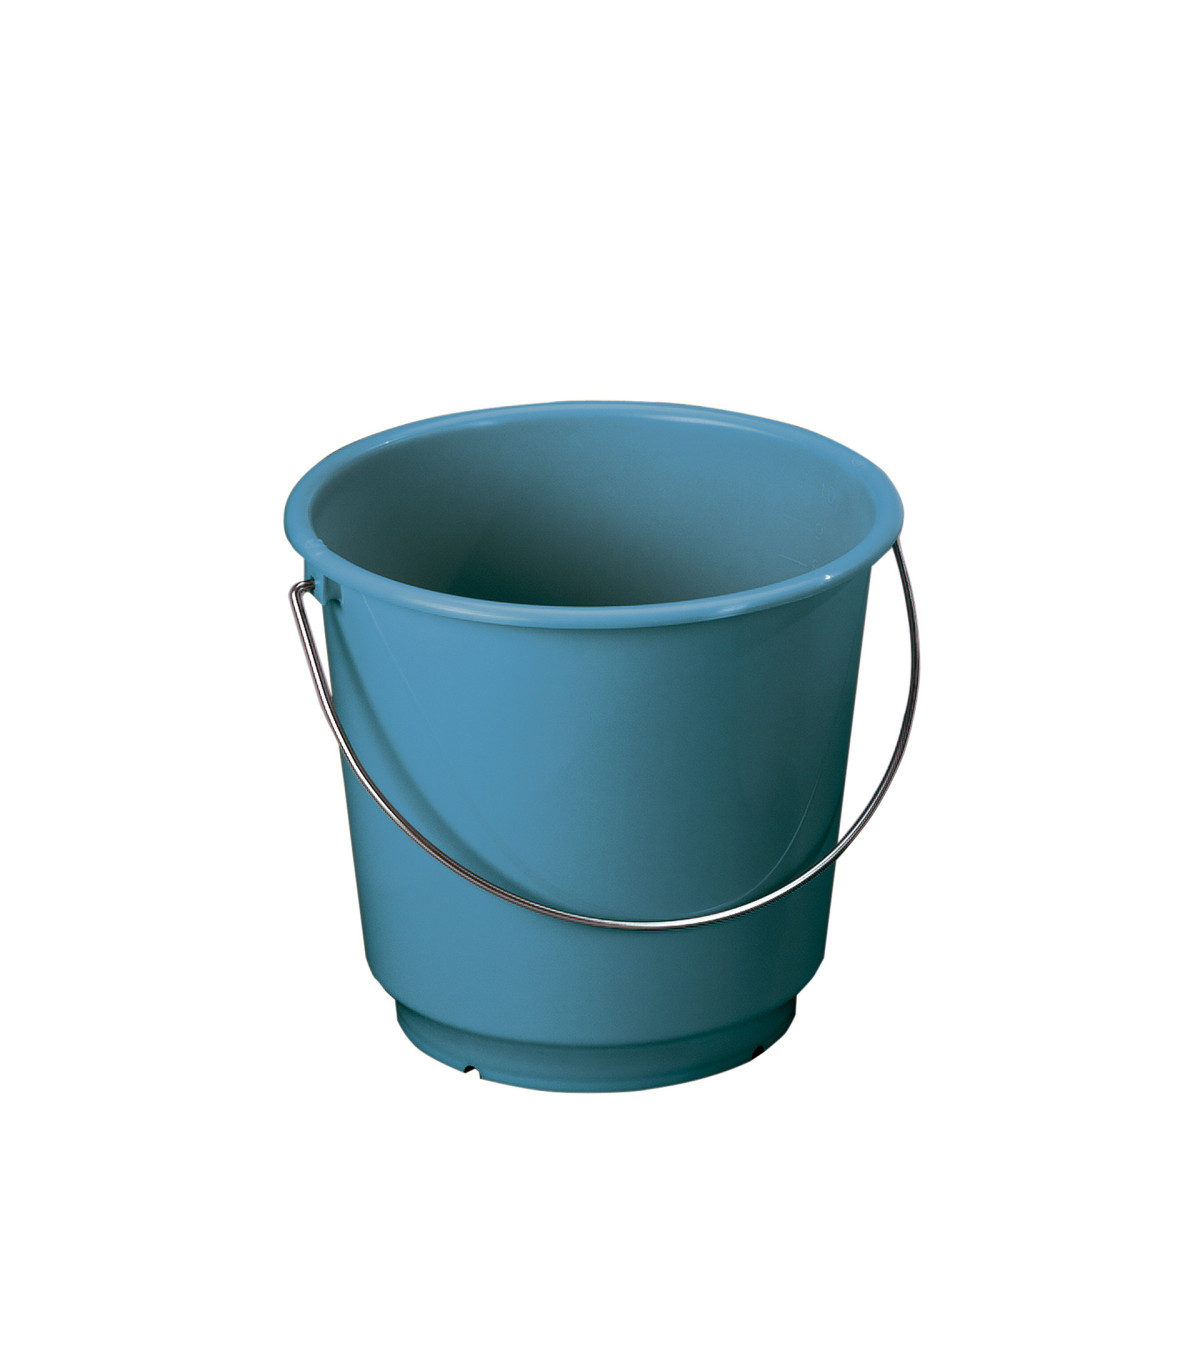 Cubo de plástico resistente para limpieza Nordik 15 L. 13050 uds) DENOX- FAMESA skrc, comprar online